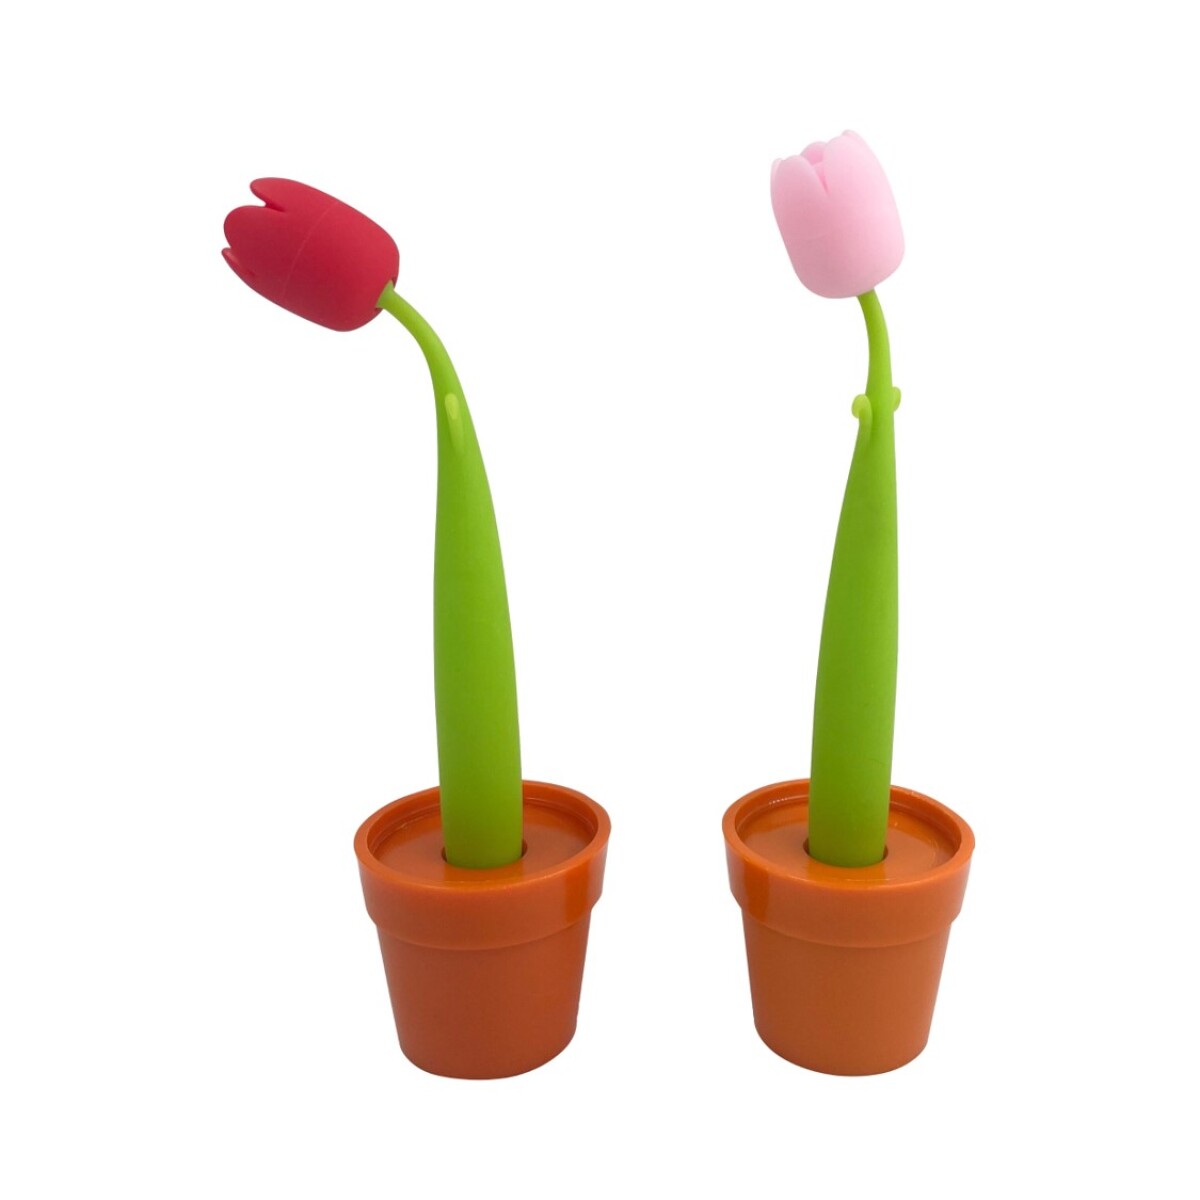 Lapicera tulipan - rojo 